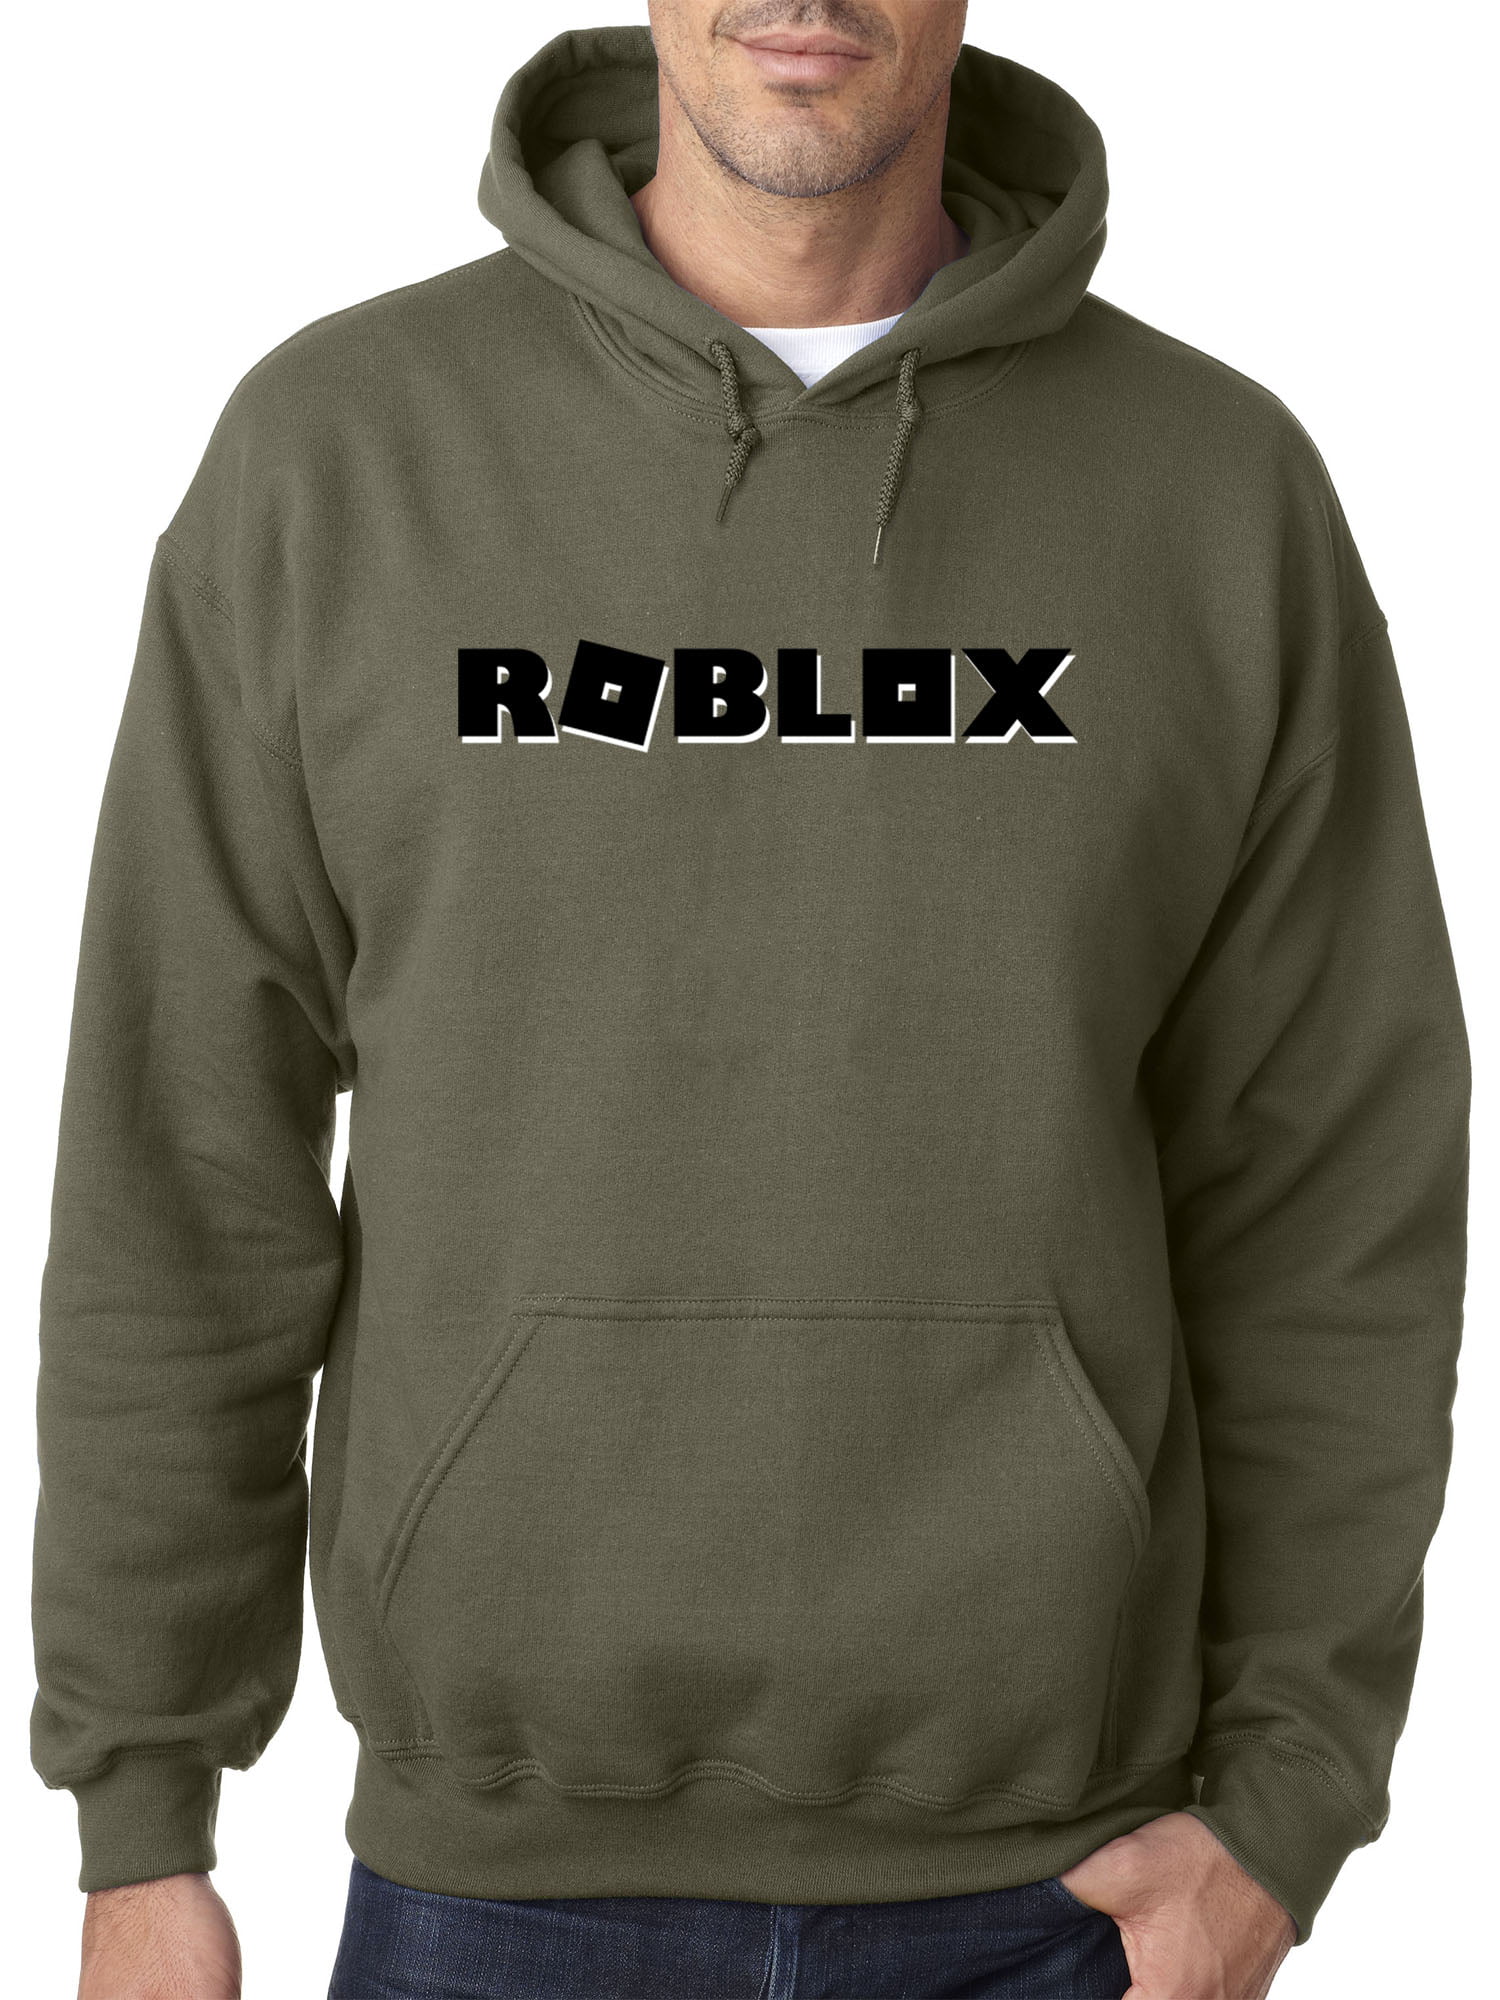 Roblox Jacket Tutorial